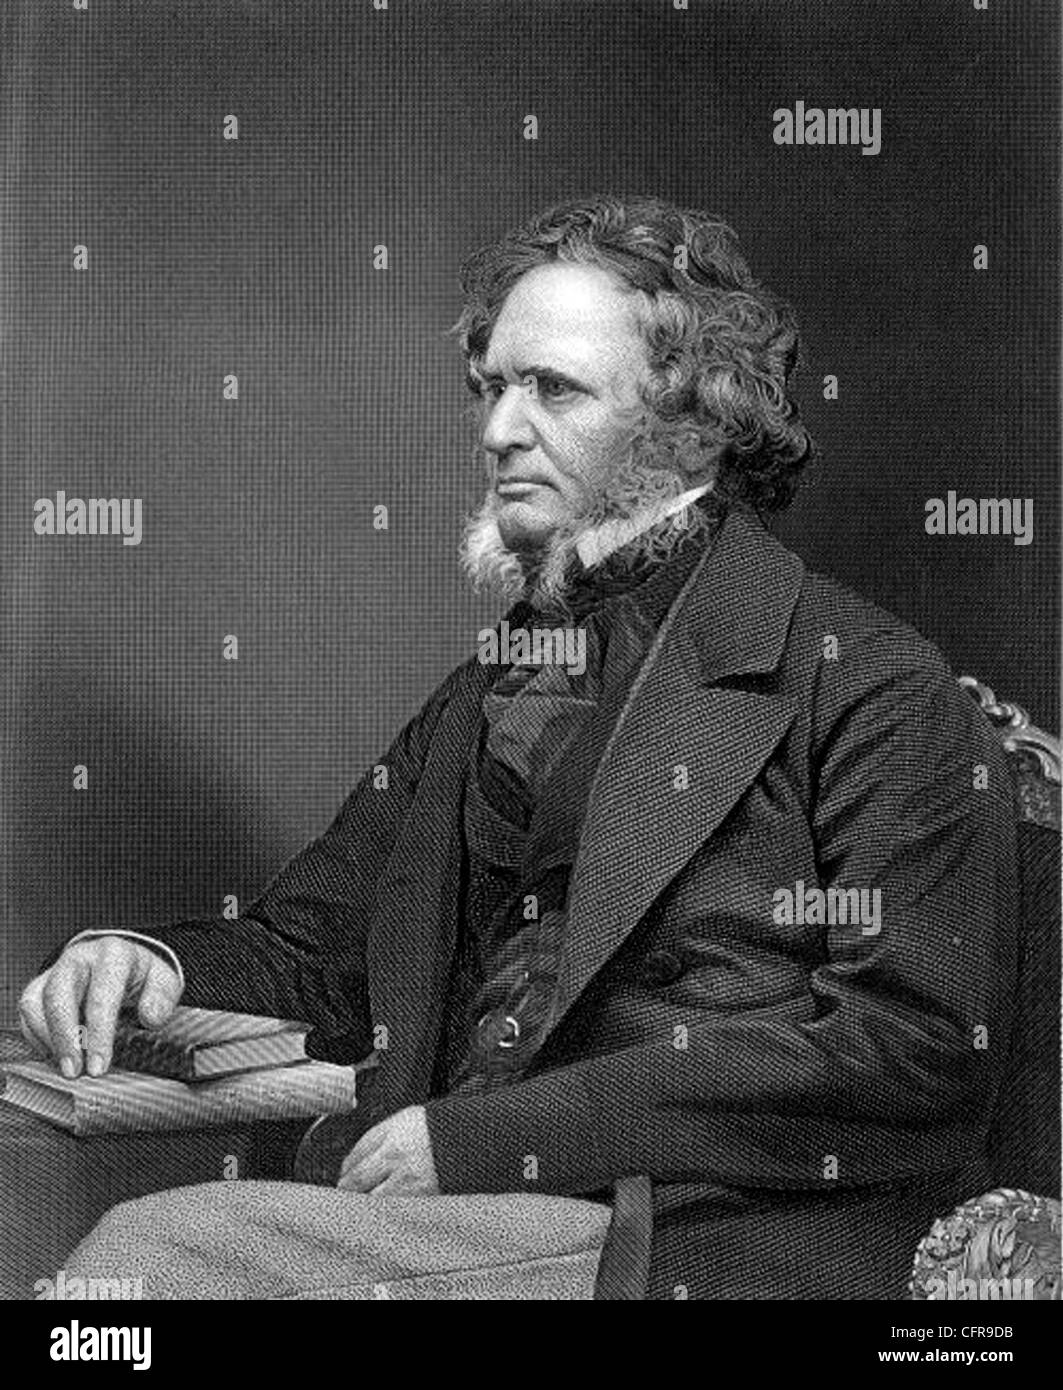 EDWARD SMITH STANLEY de 14º Conde de Derby (1799-1869) estadista inglés y tres veces Primer Ministro Foto de stock